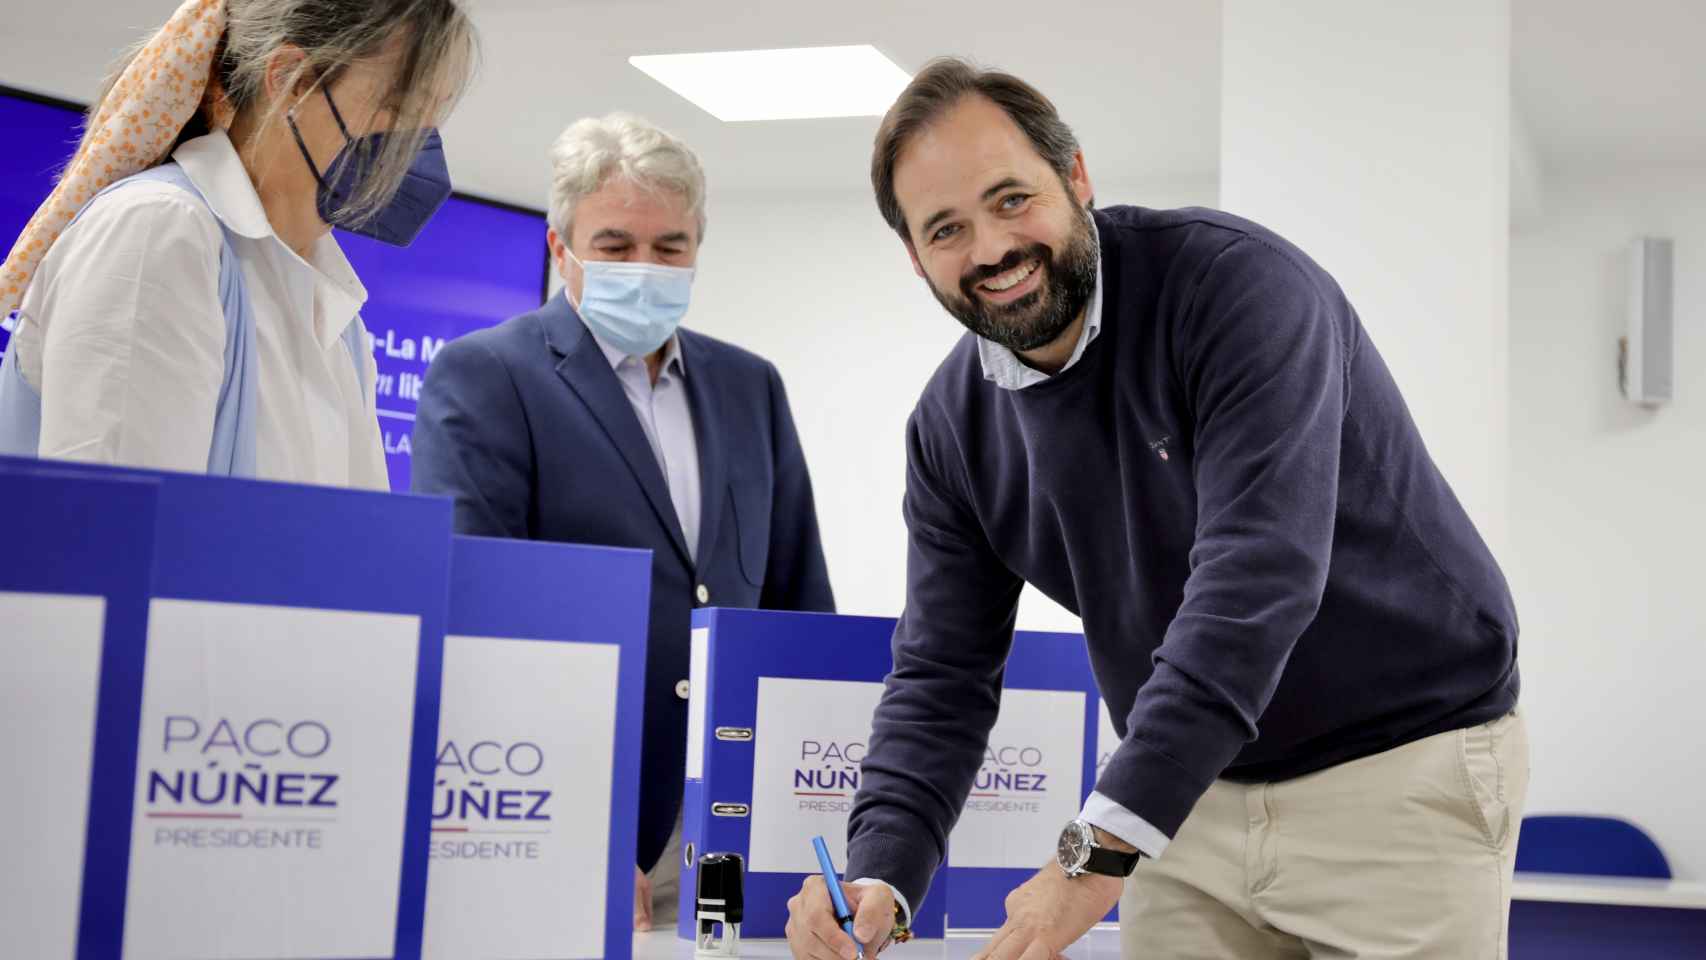 Confirmado: Núñez no tendrá rivales y seguirá liderando el PP de Castilla-La Mancha